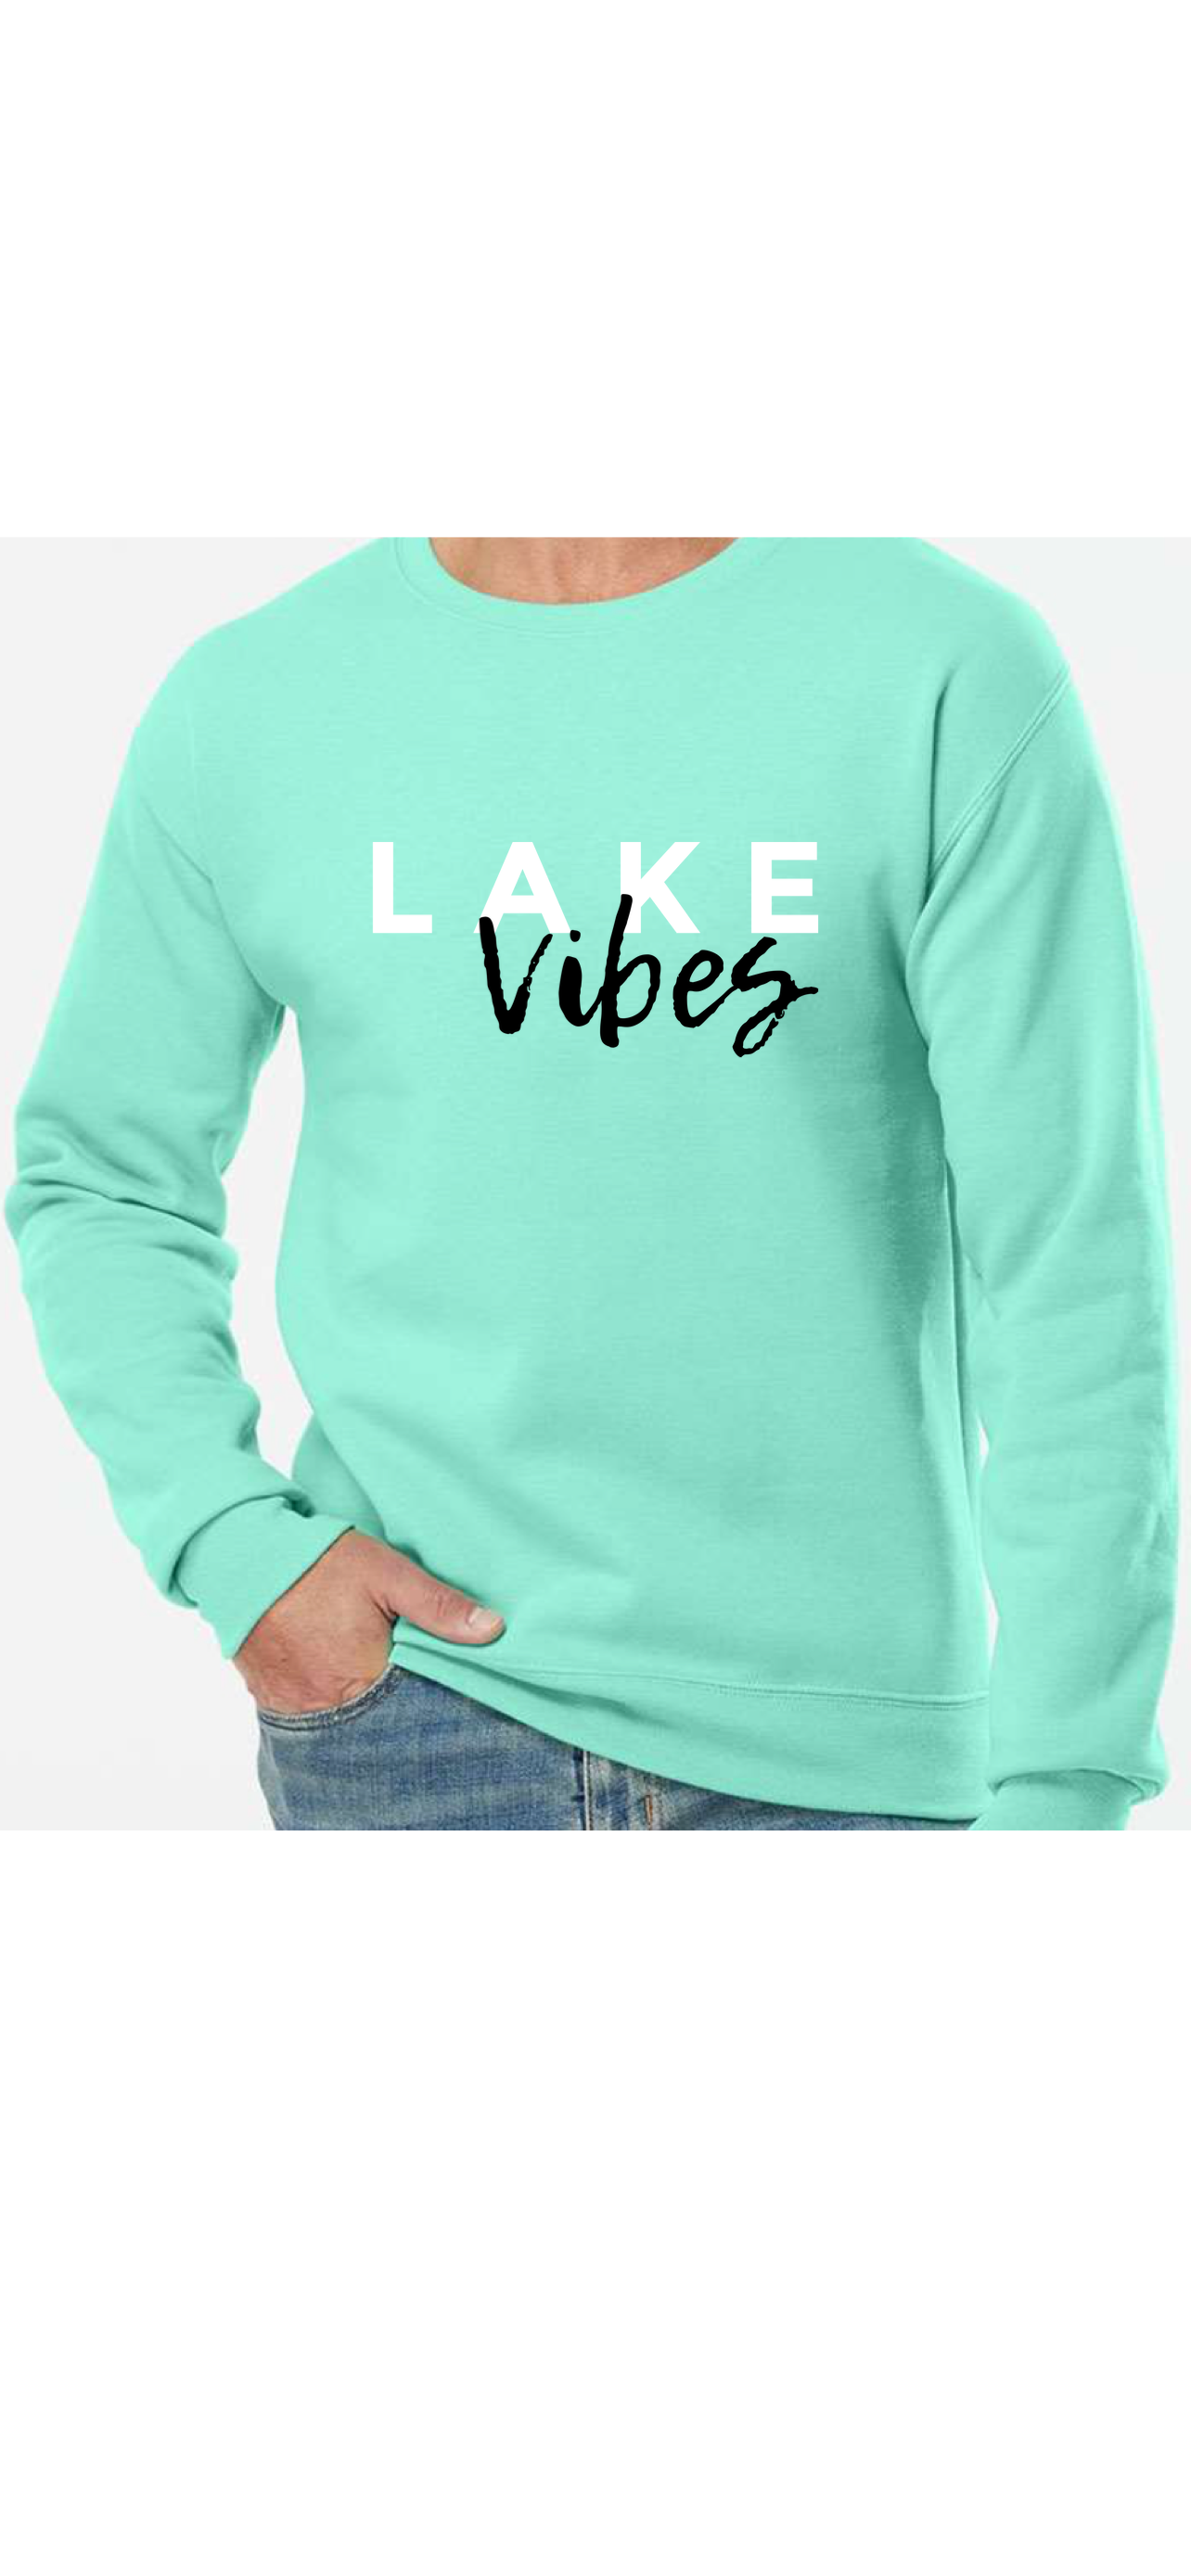 Lake Life sweatshirt| Lake life shirt| Lake Life shirt| Life at the lake tee| Lake Shirt